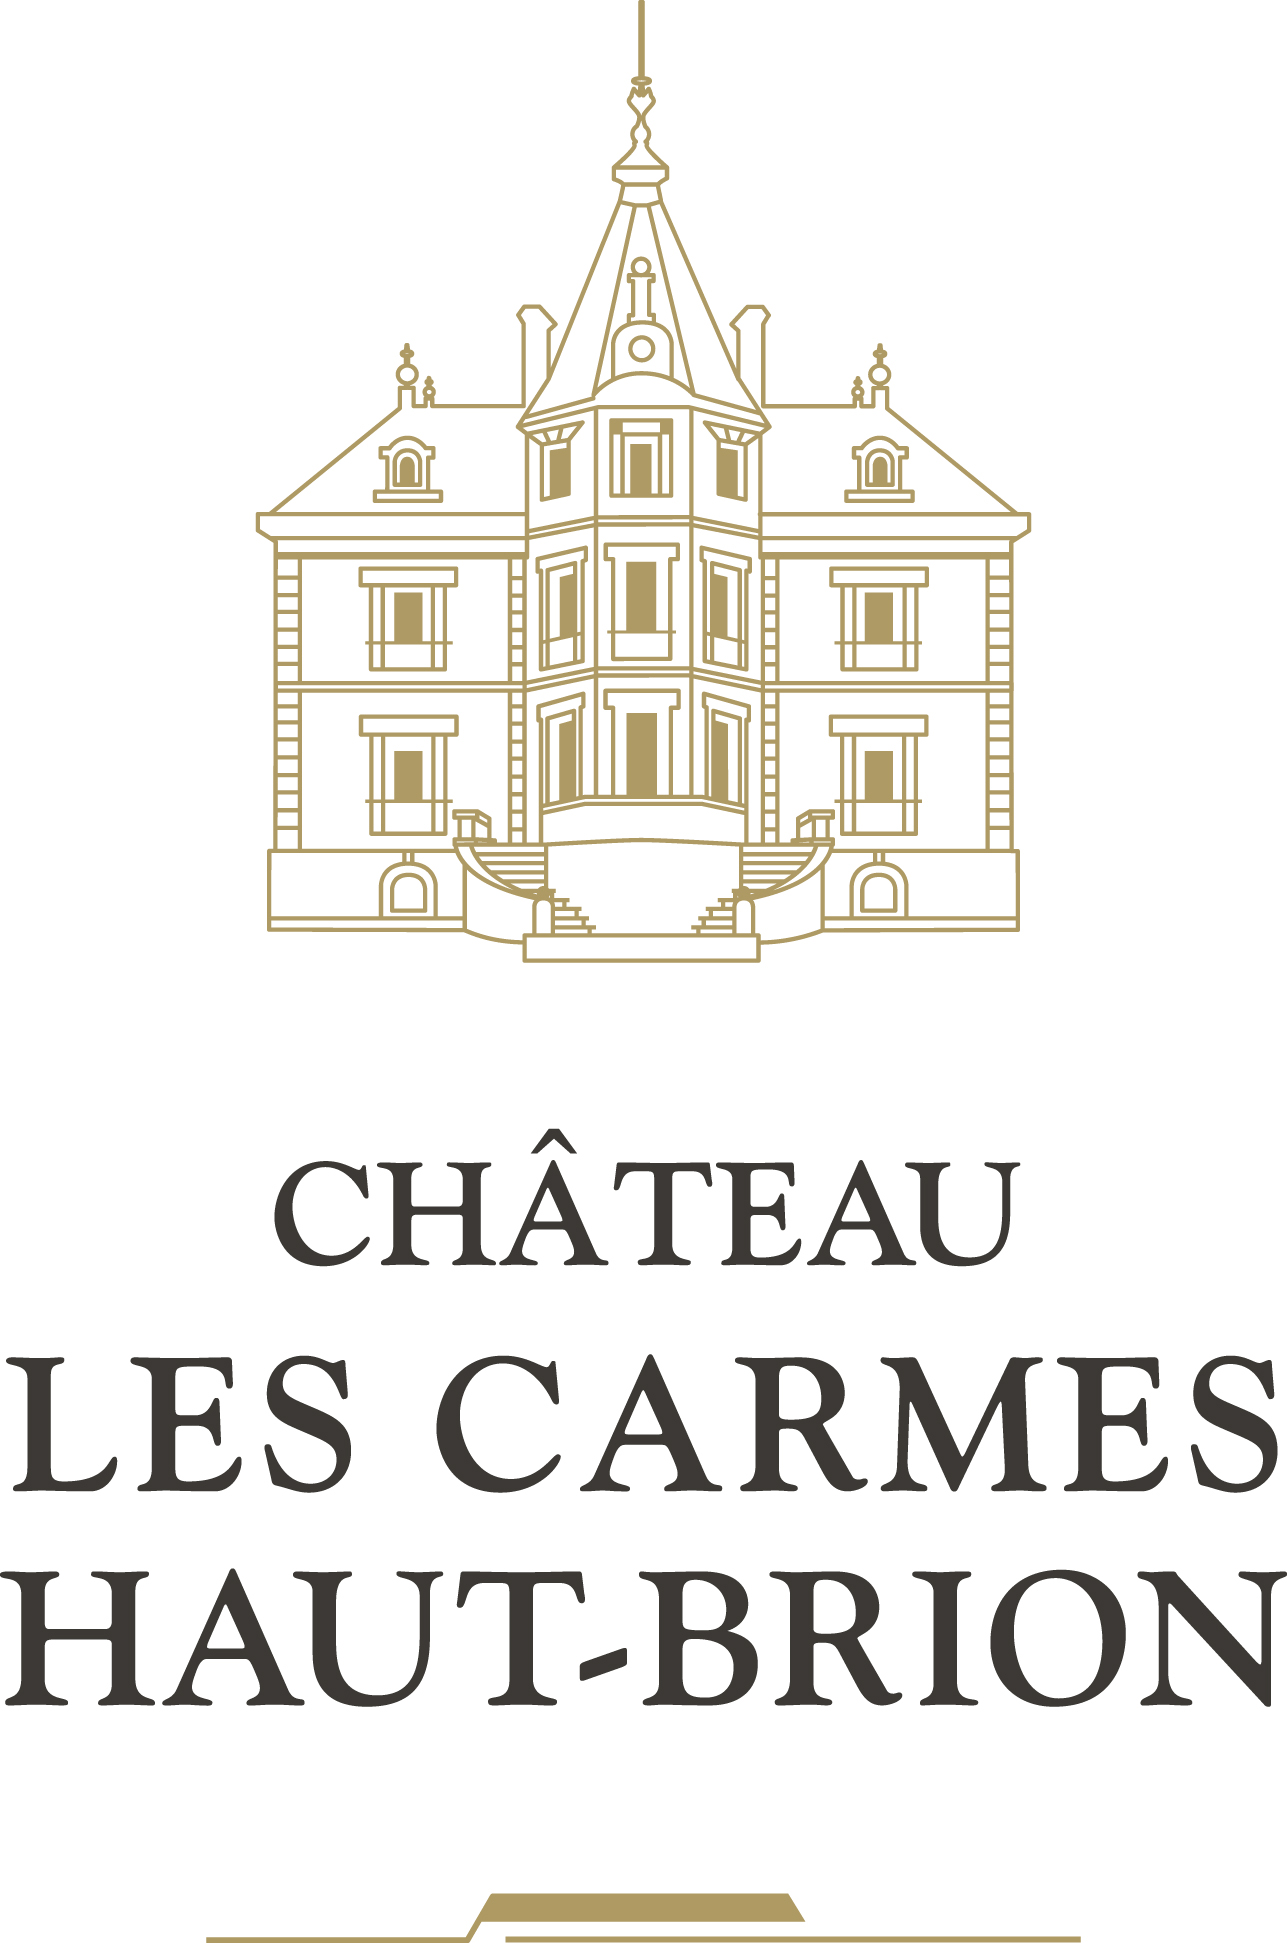 Château Les Carmes Haut Brion